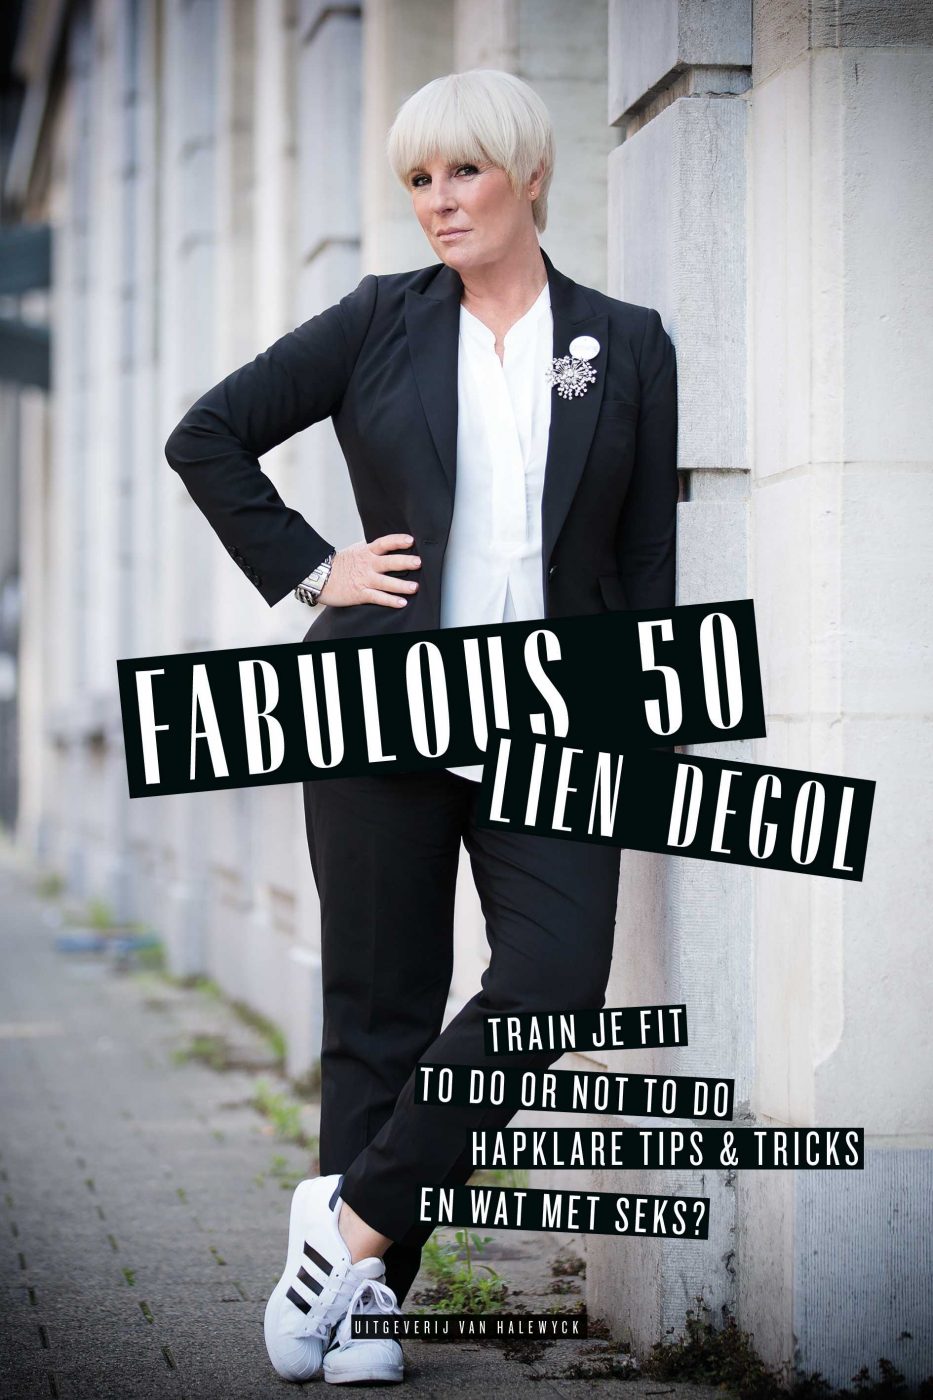 Lien Degol Fabulous 50